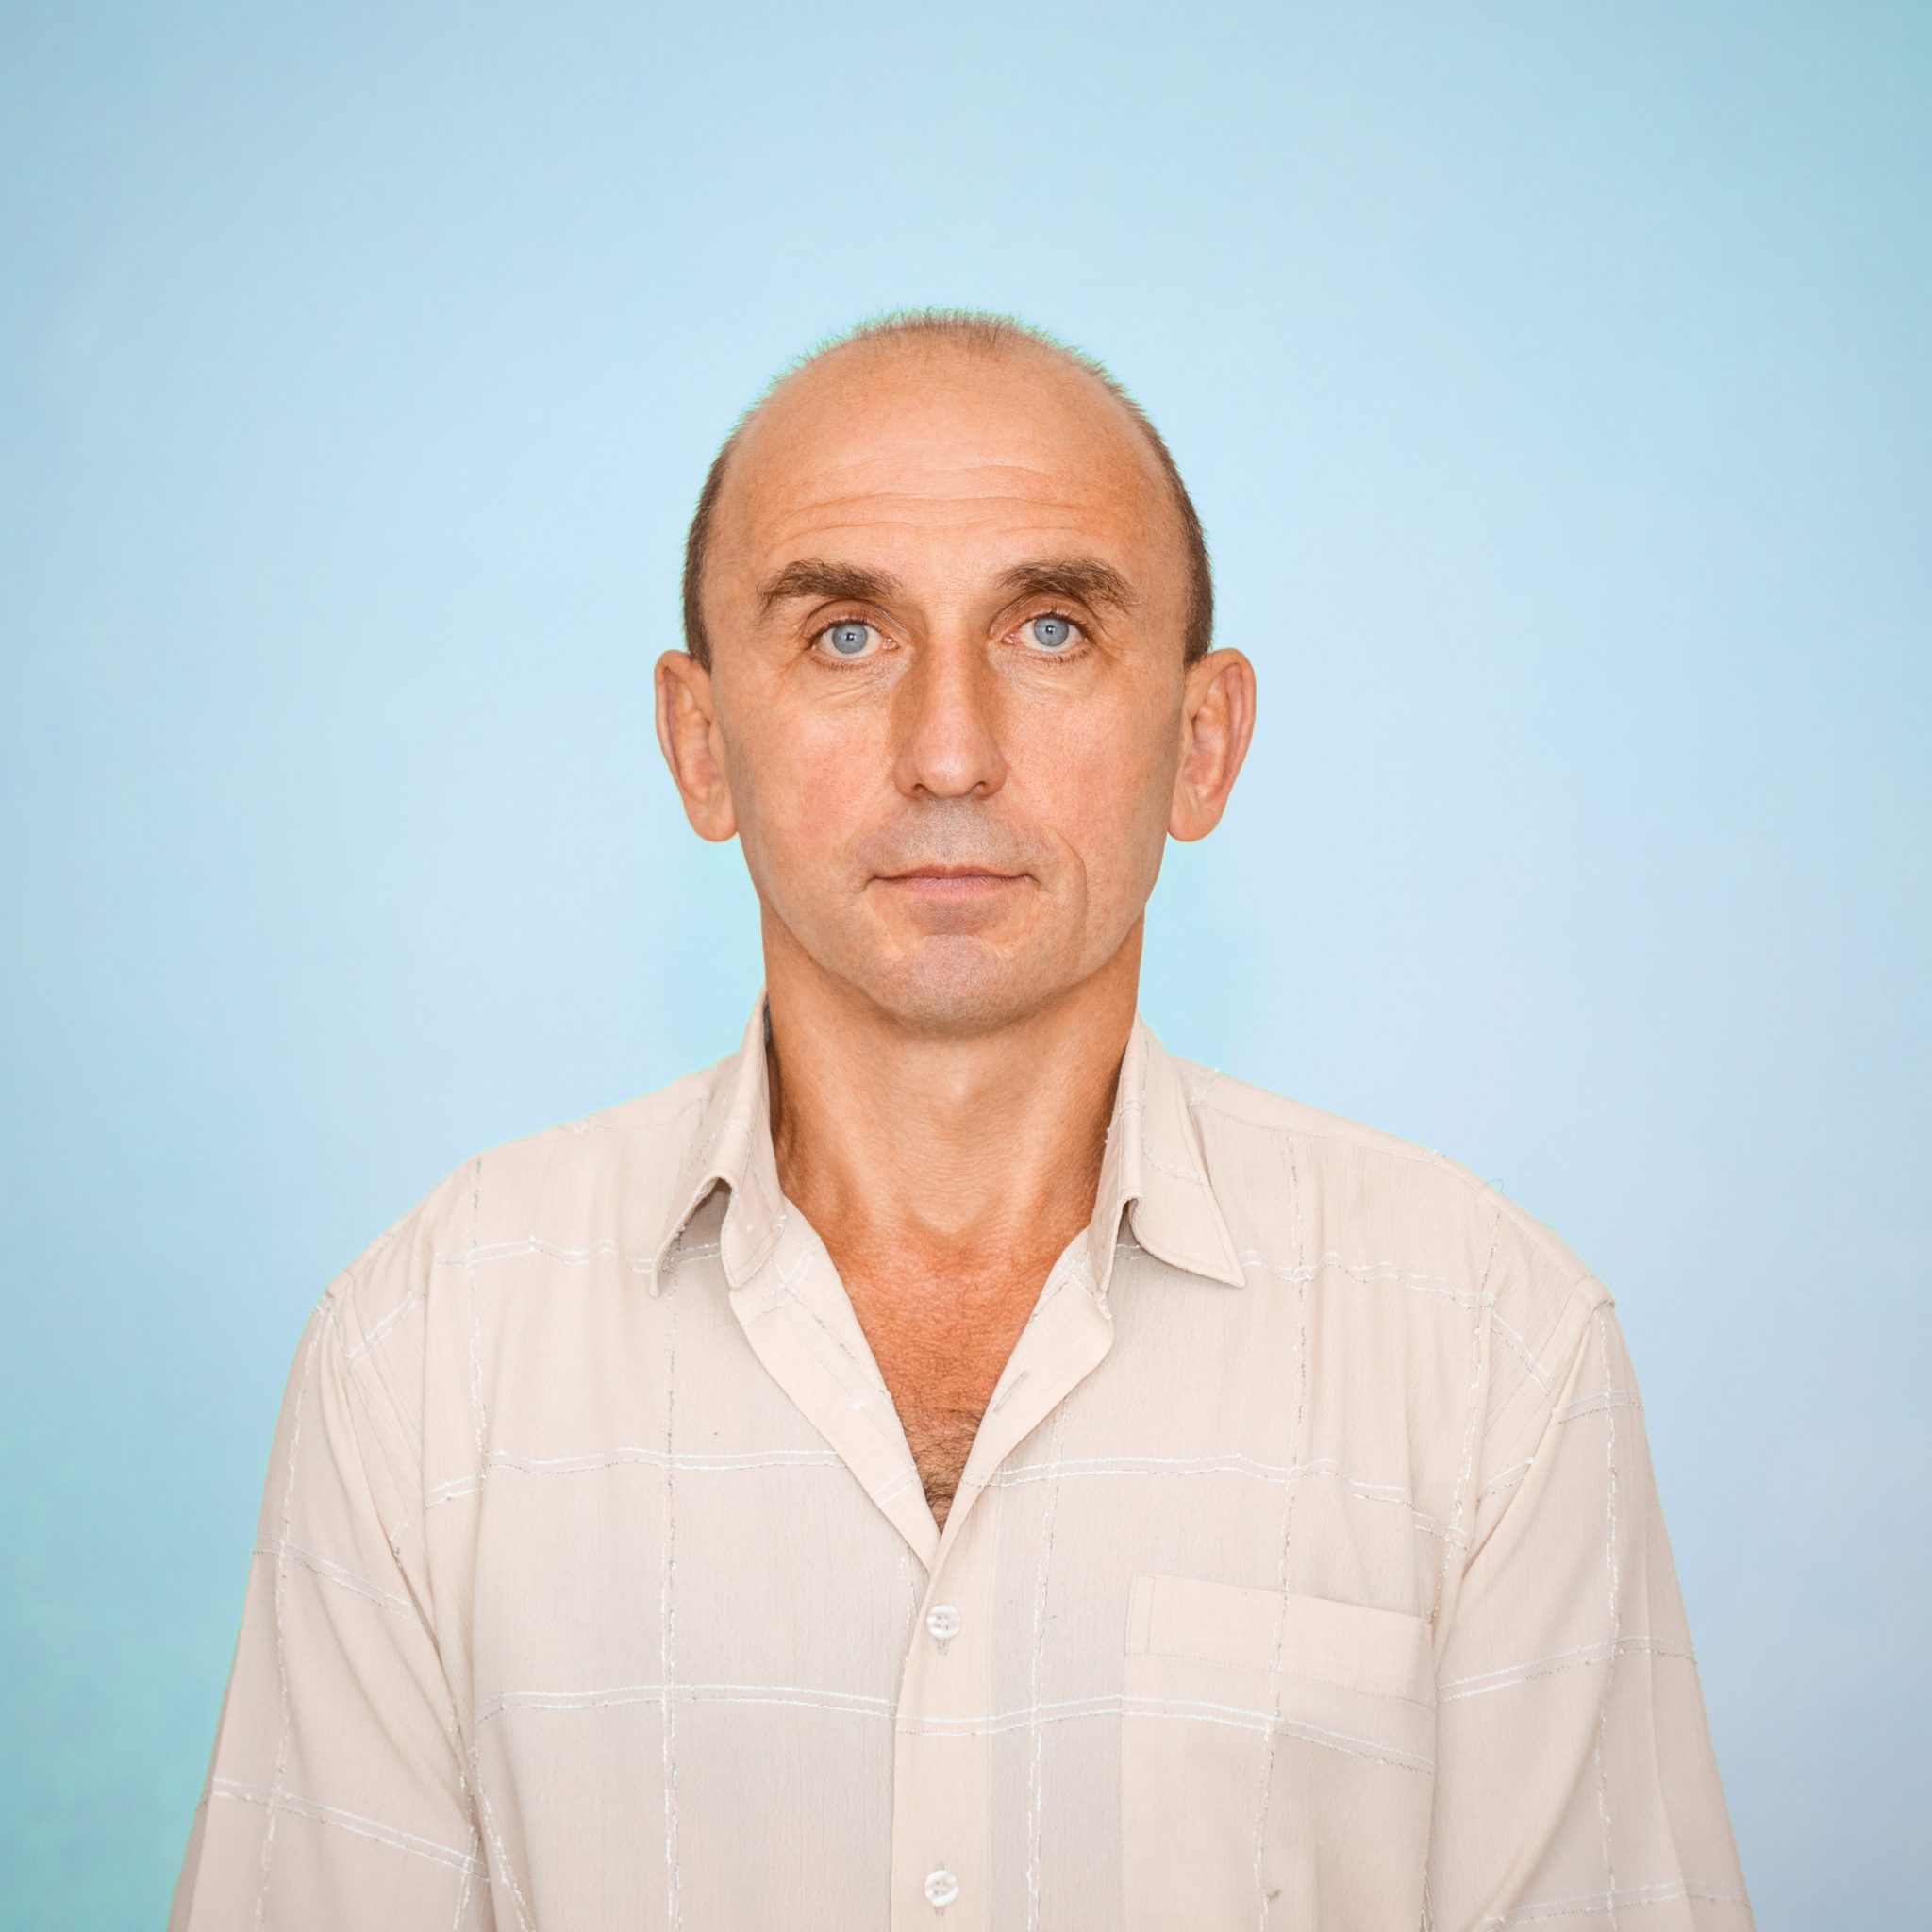 Давідіч Юрій Олександрович  – доктор технічних наук, професор